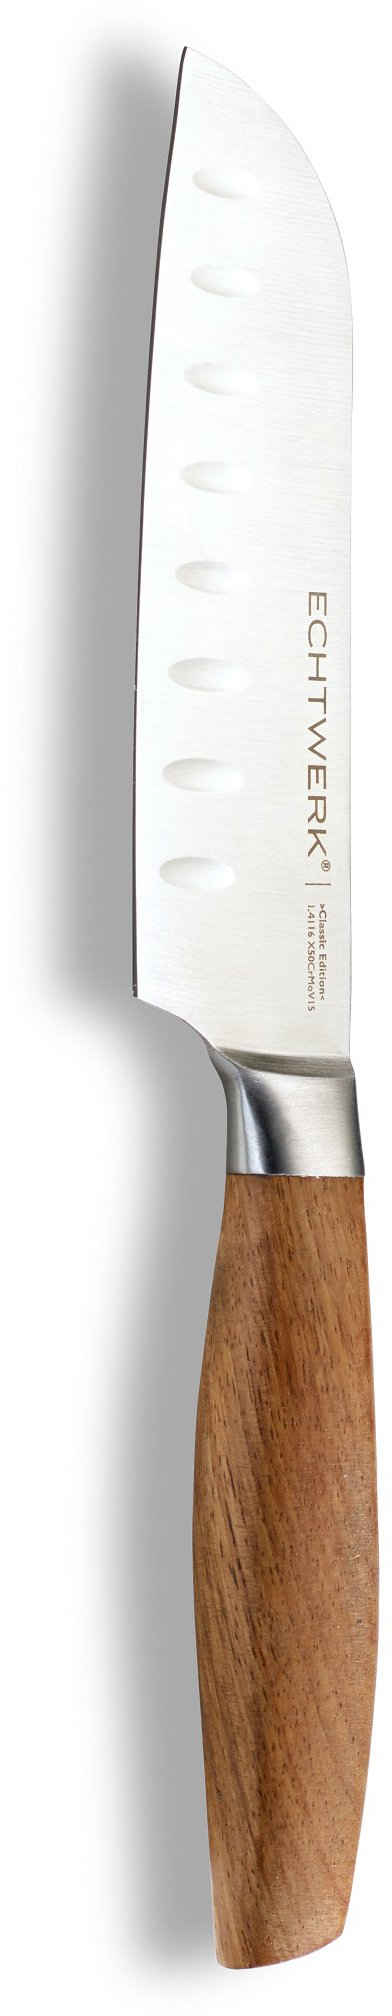 ECHTWERK Santokumesser Classic Edition, Küchenmesser, Edelstahl, Klingenlänge 15 cm, Griff aus Akazienholz